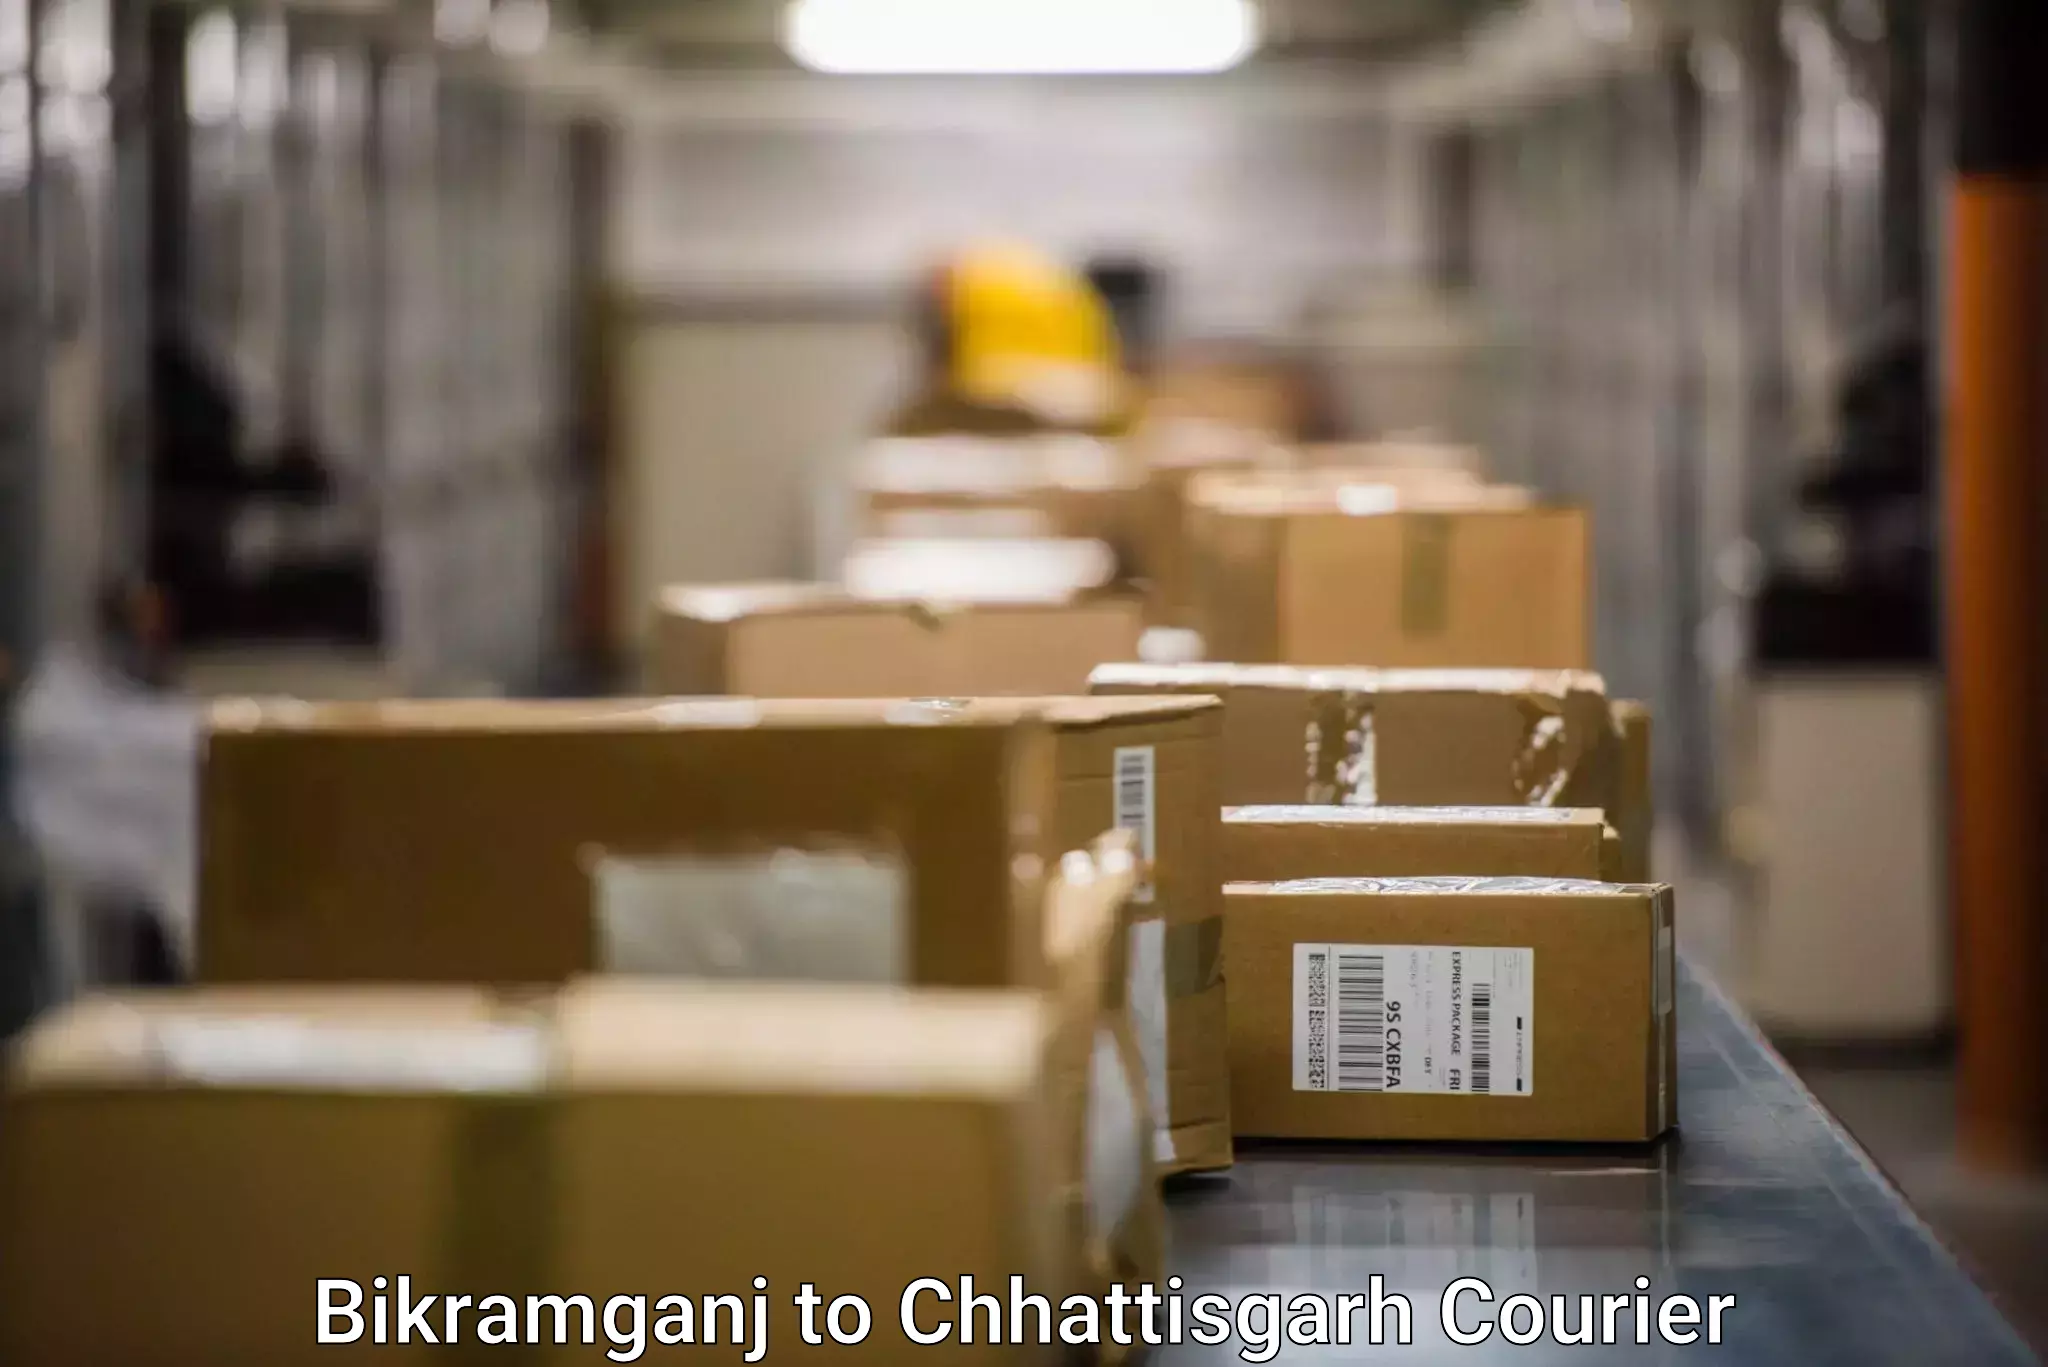 Large package courier Bikramganj to Bemetara